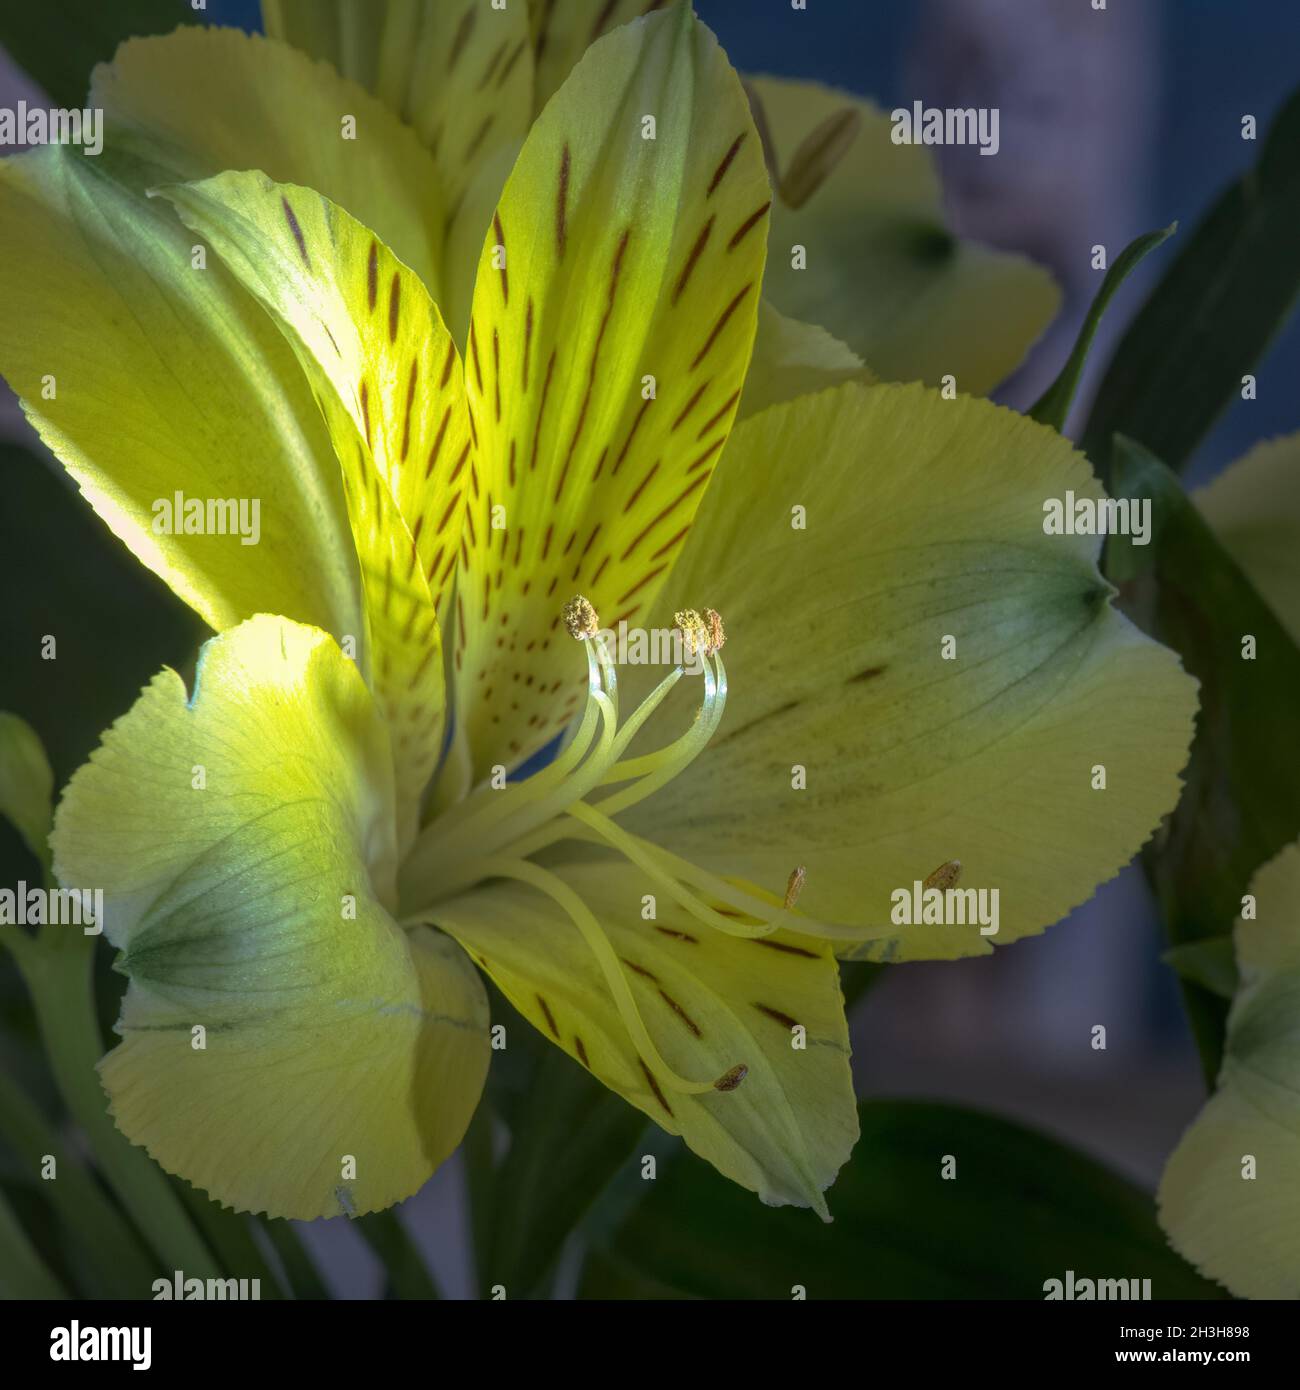 Detalle de primer plano de la flor de alstroemeria de color amarillo brillante Foto de stock